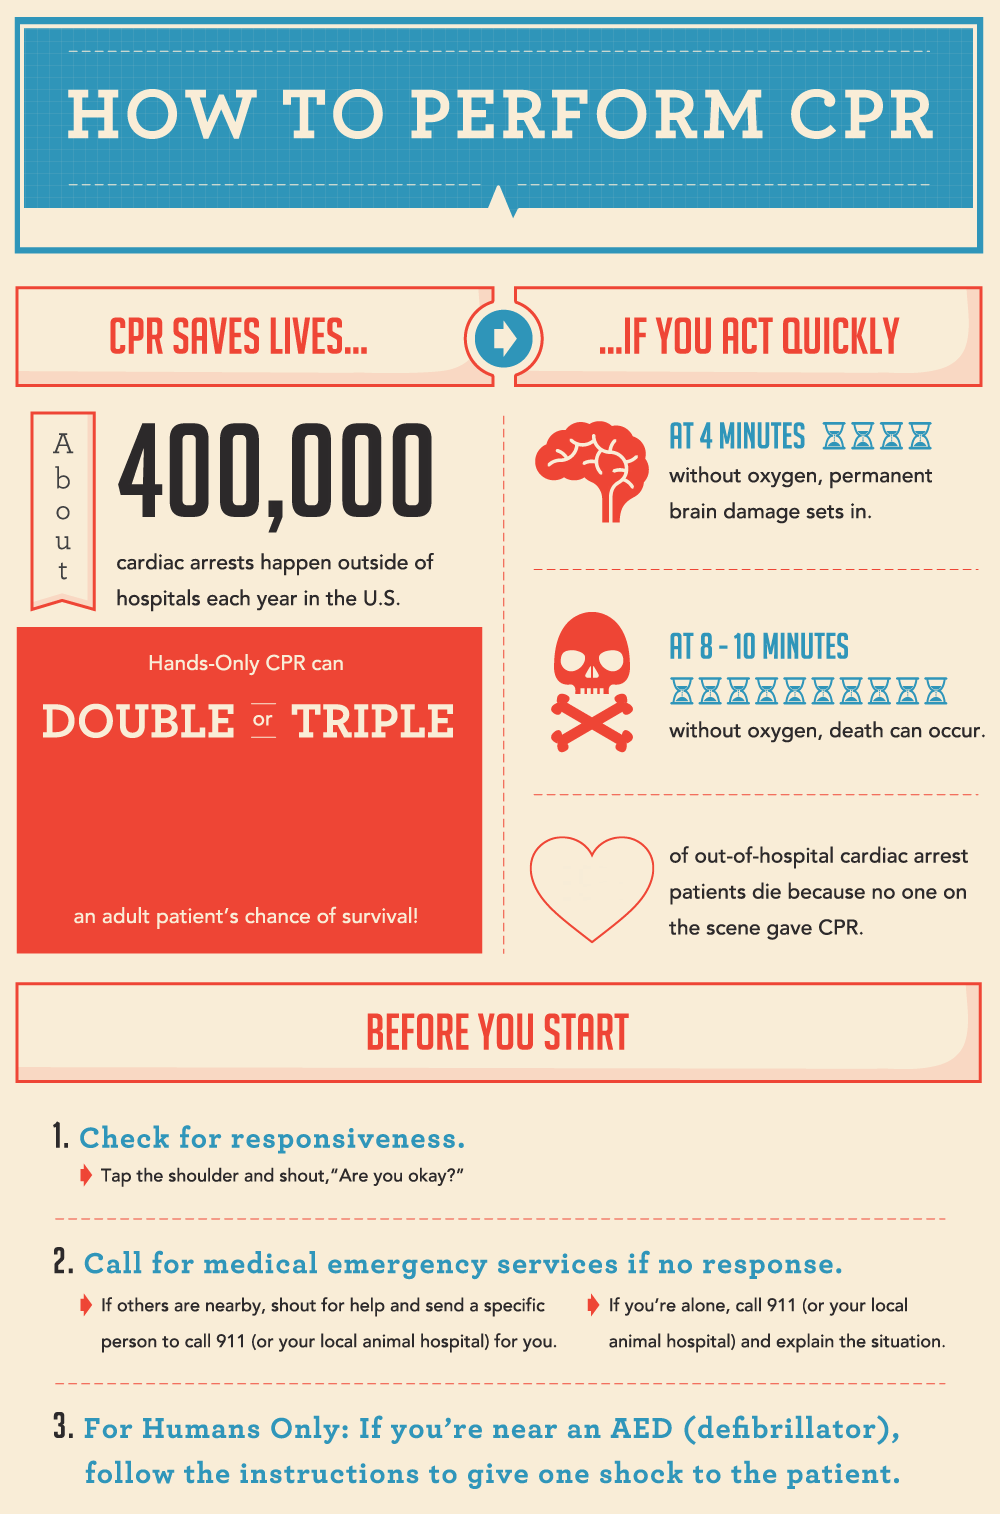 Cpr перевод. CPR маркетинг. How to perform CPR. Инфографика гиф.